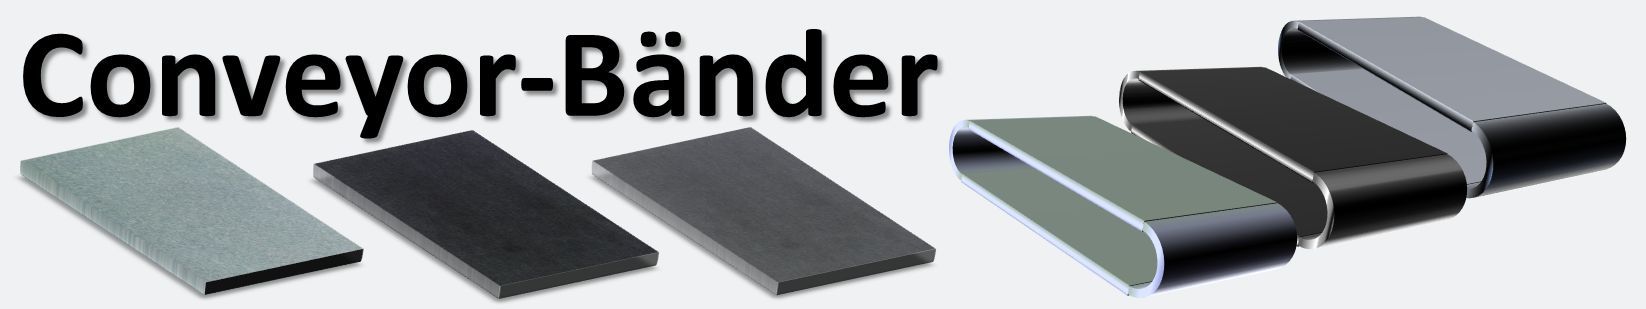 Conveyor-Baender_k